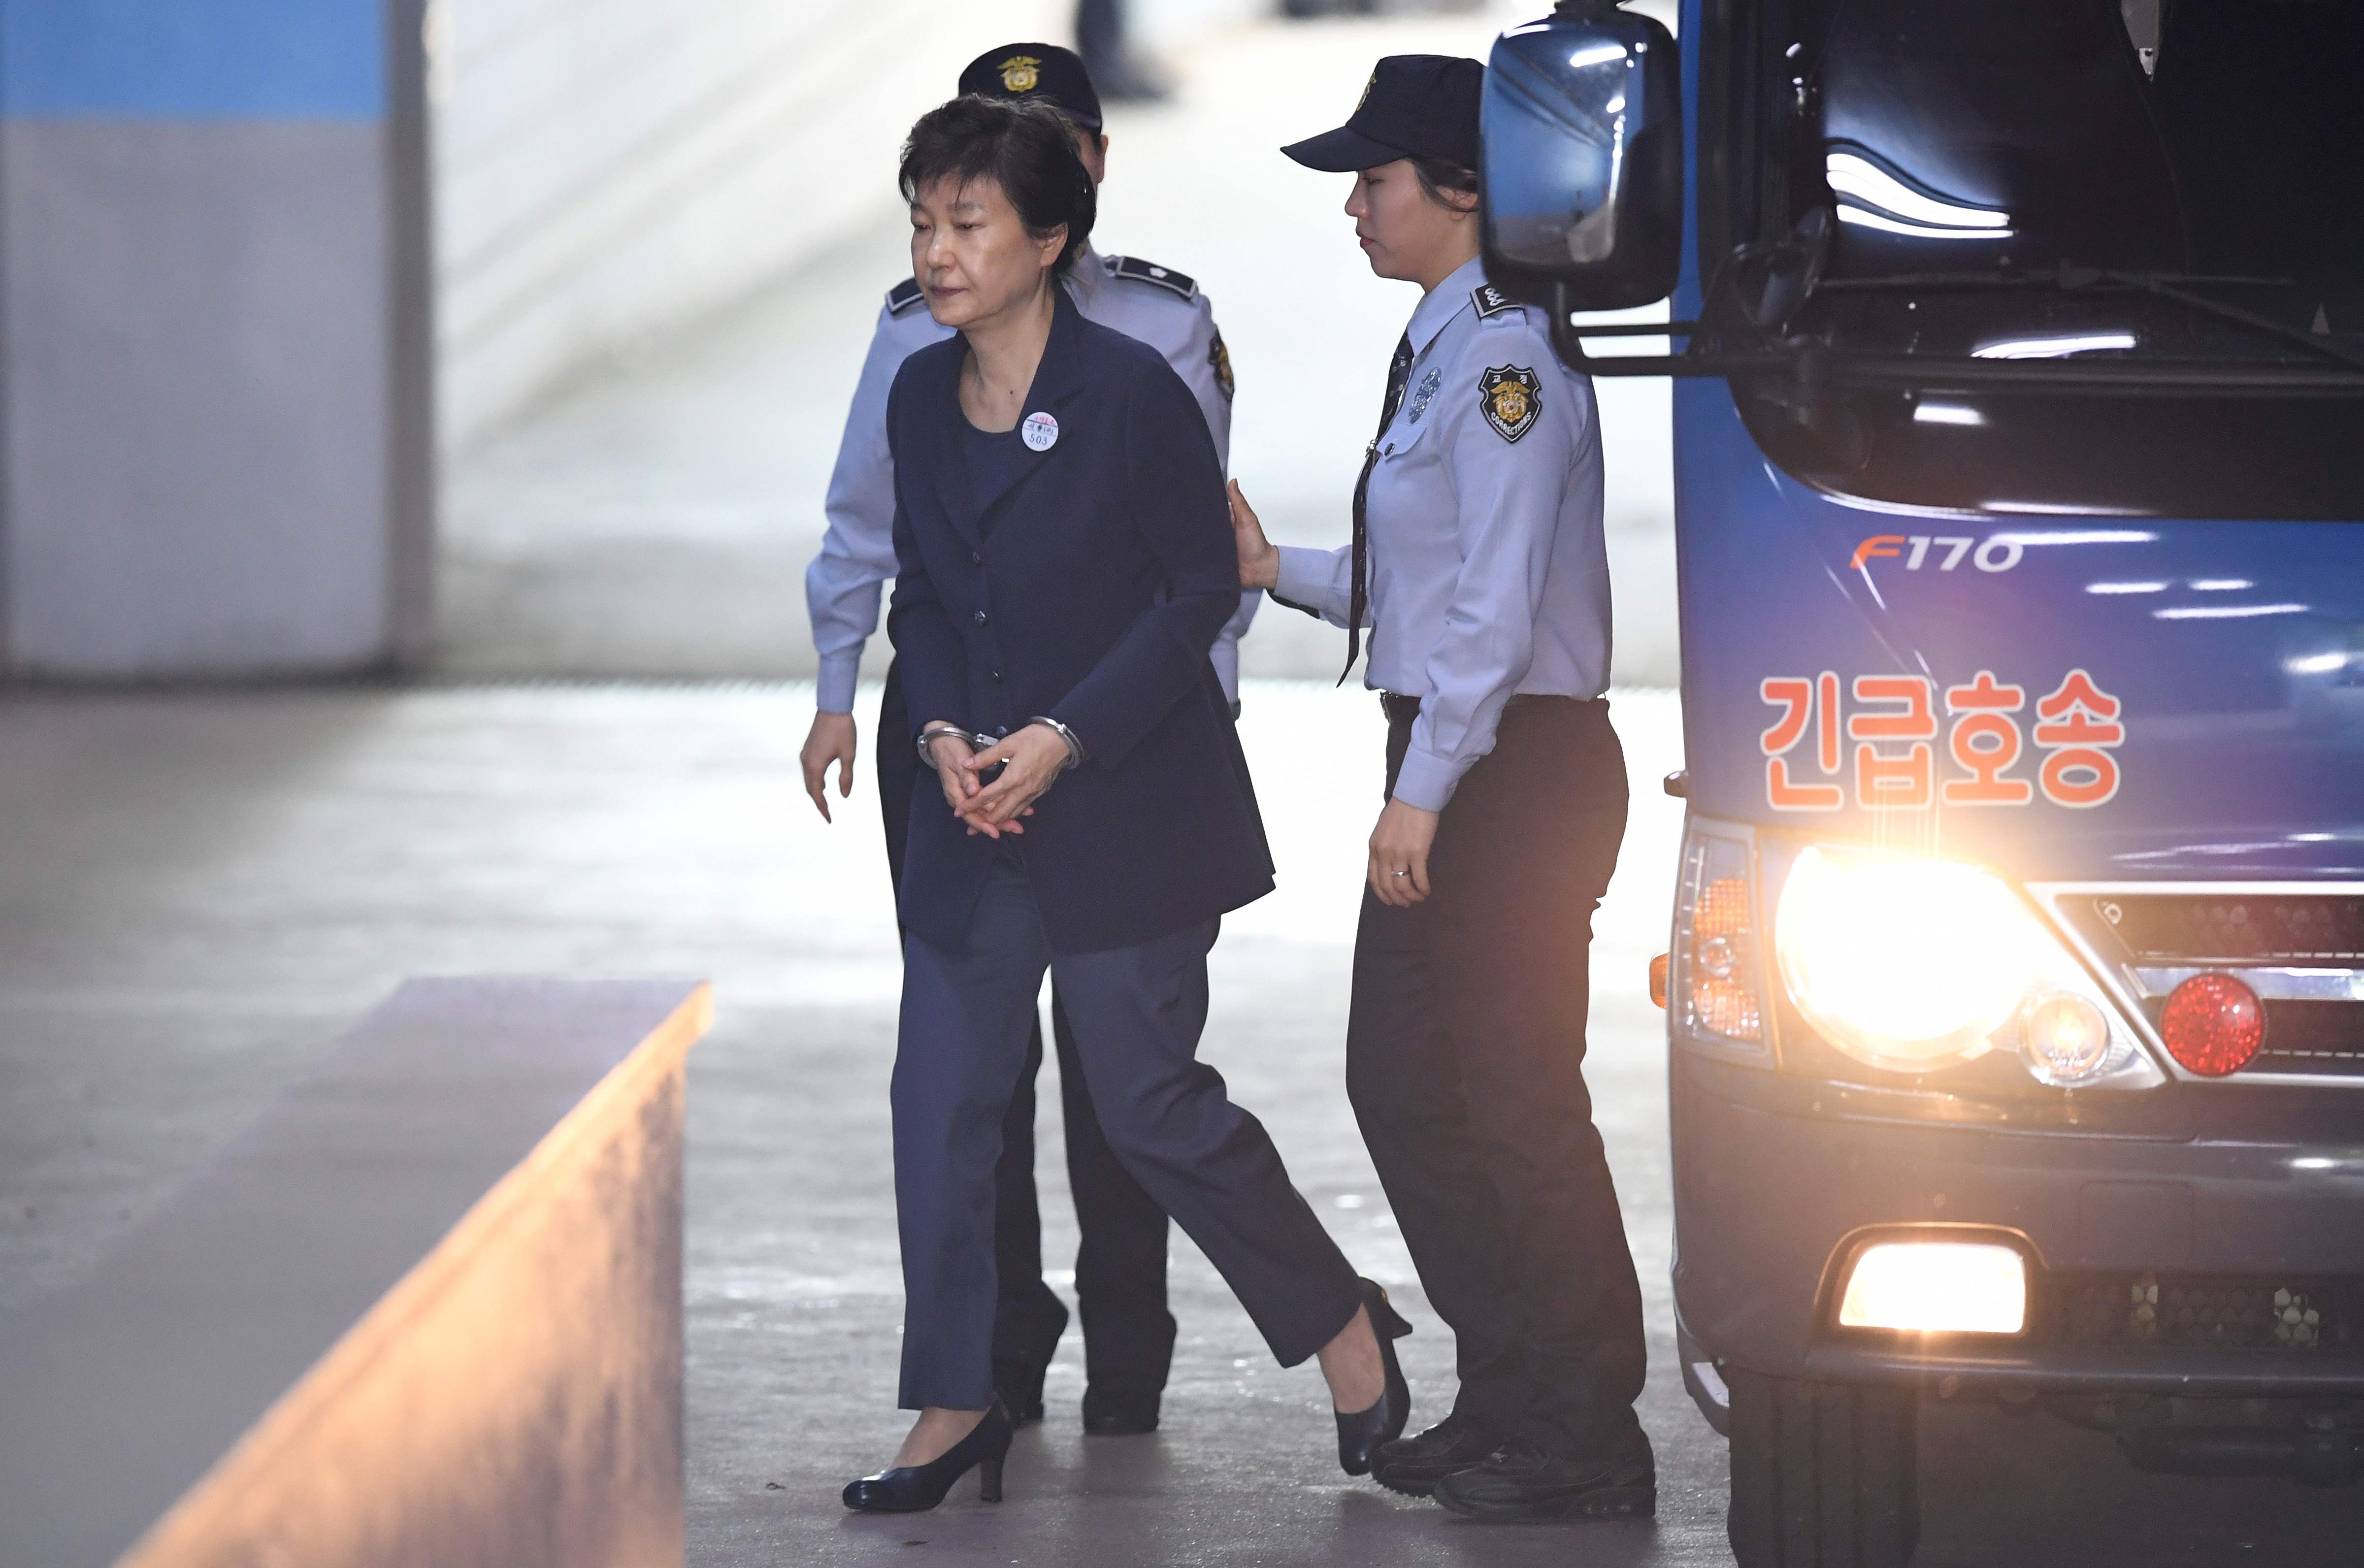 دخول رئيسة كوريا الجنوبية السابقة بـالكلابشات إلى قاعة المحكمة